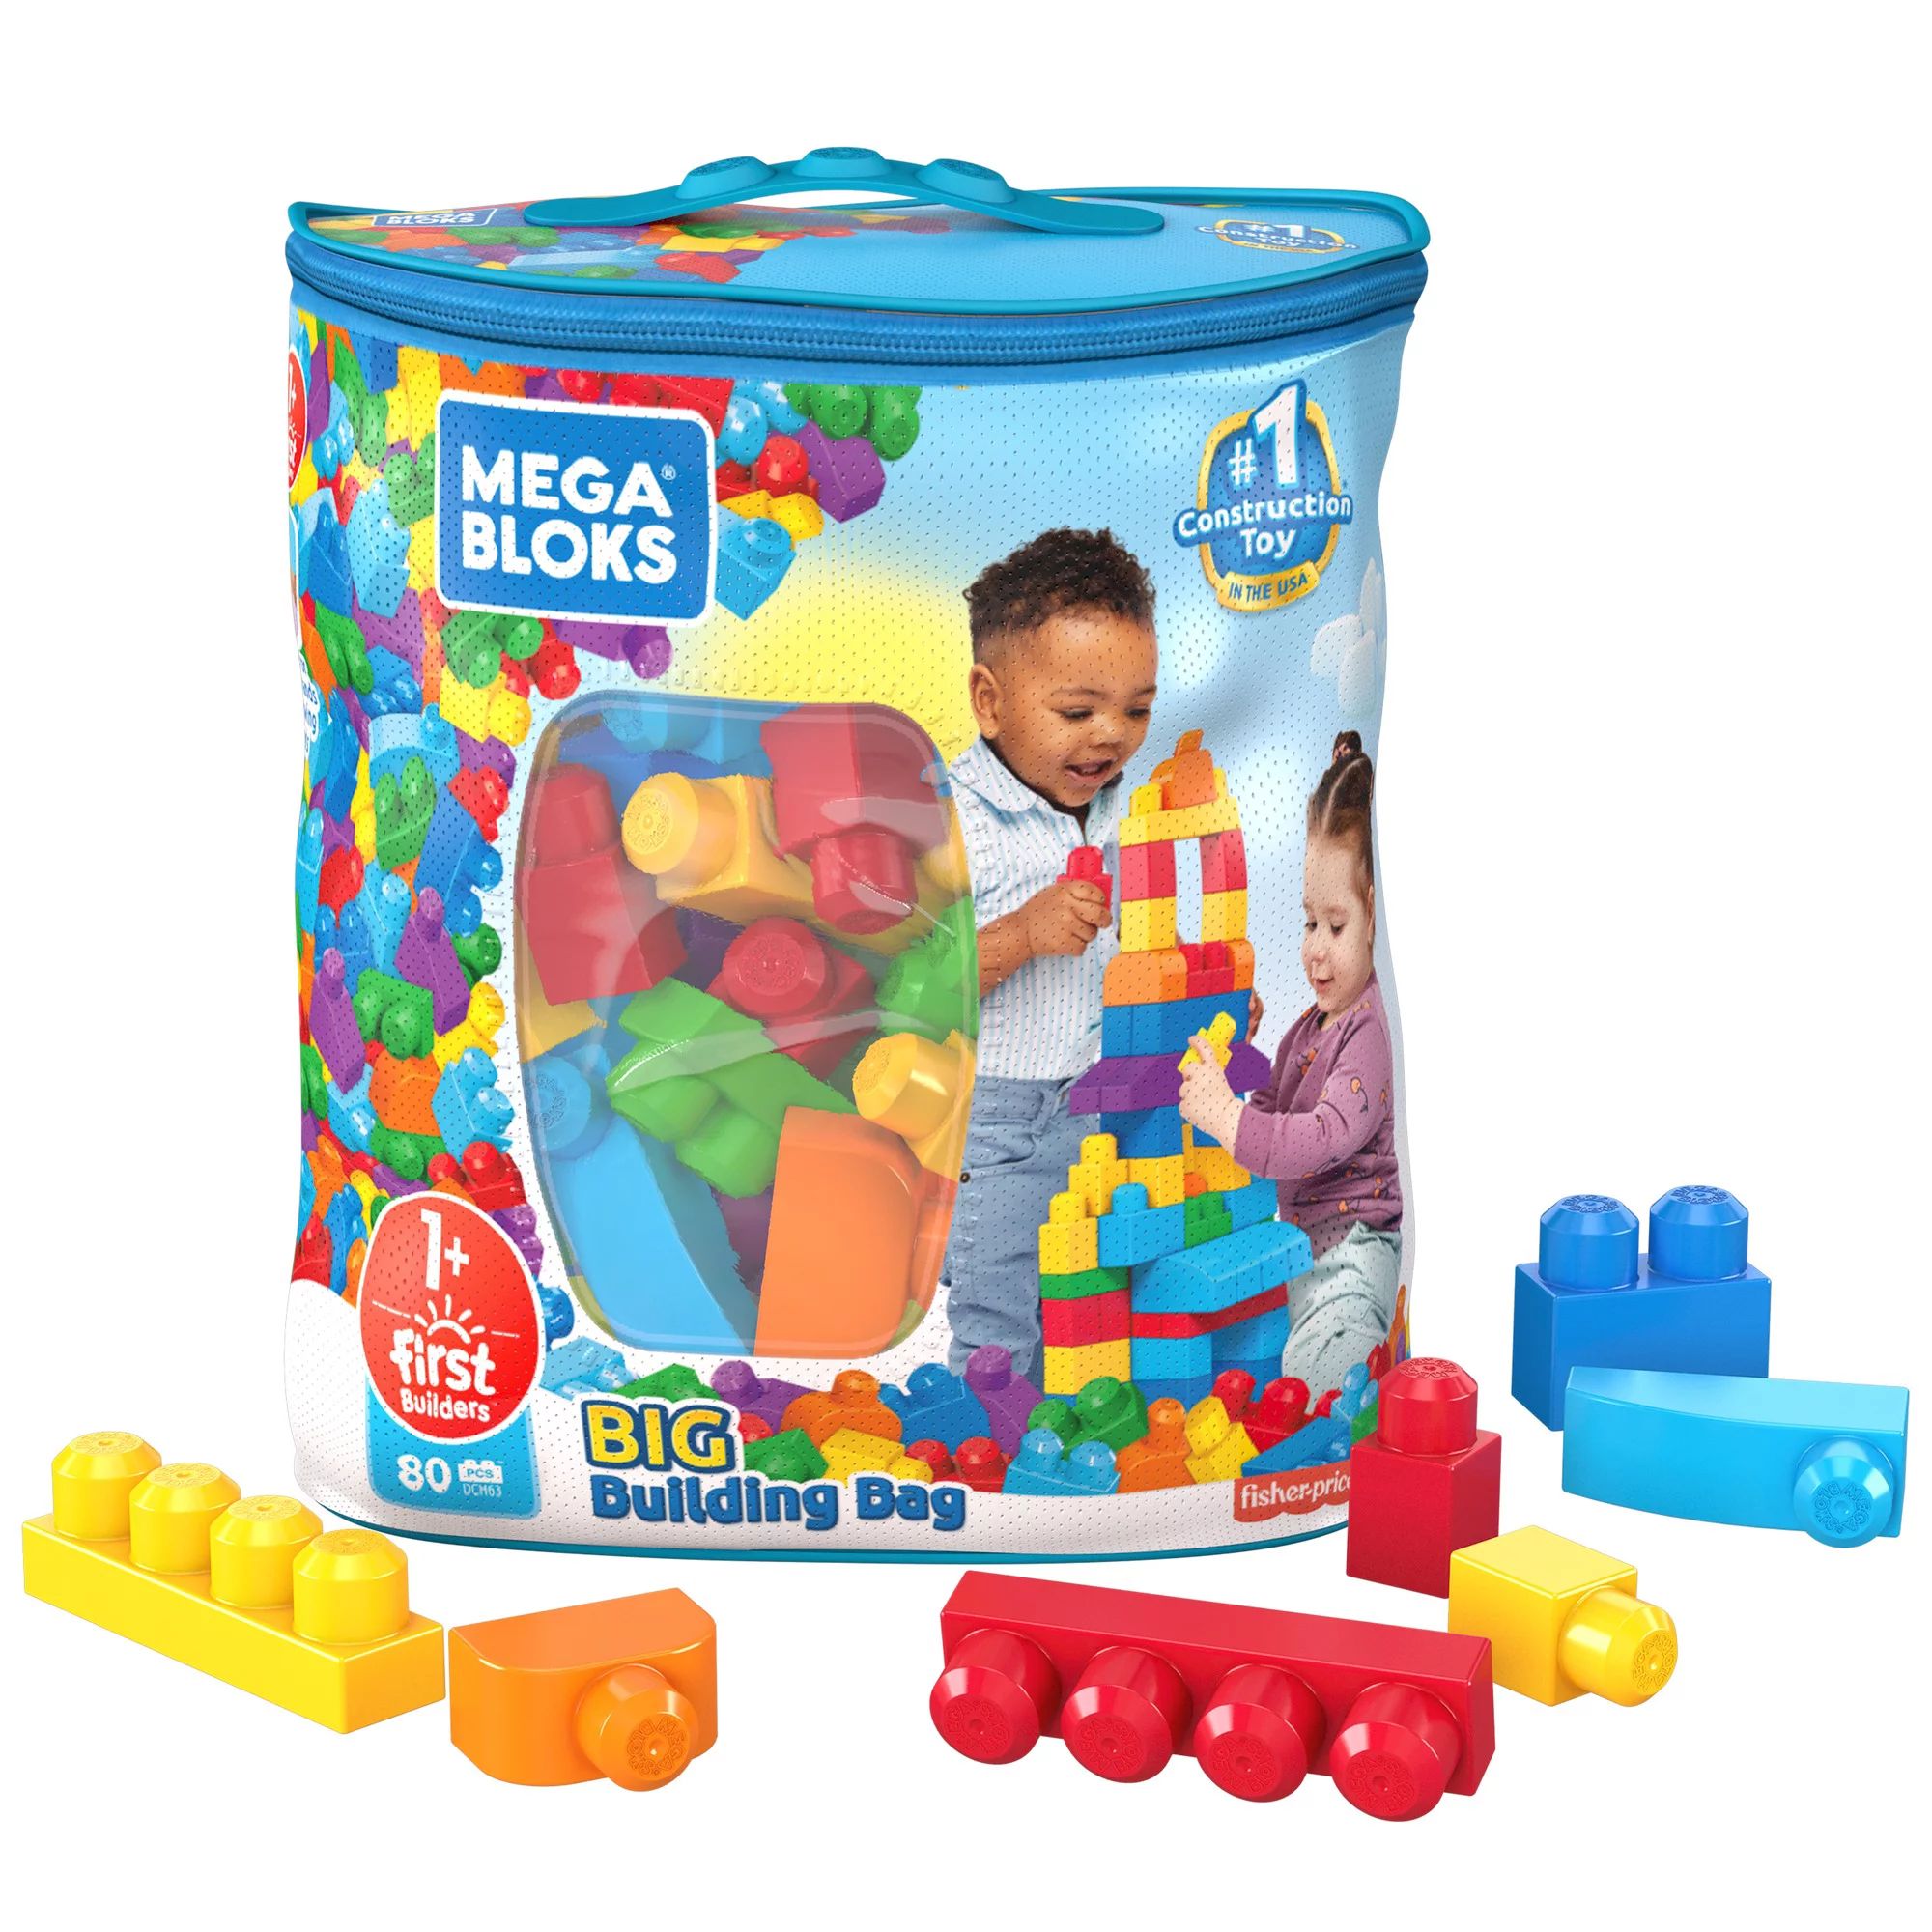 Mega Bloks First Builders Big Building Bag with Big Building Blocks, Building Toys for Toddlers (... | Walmart (US)